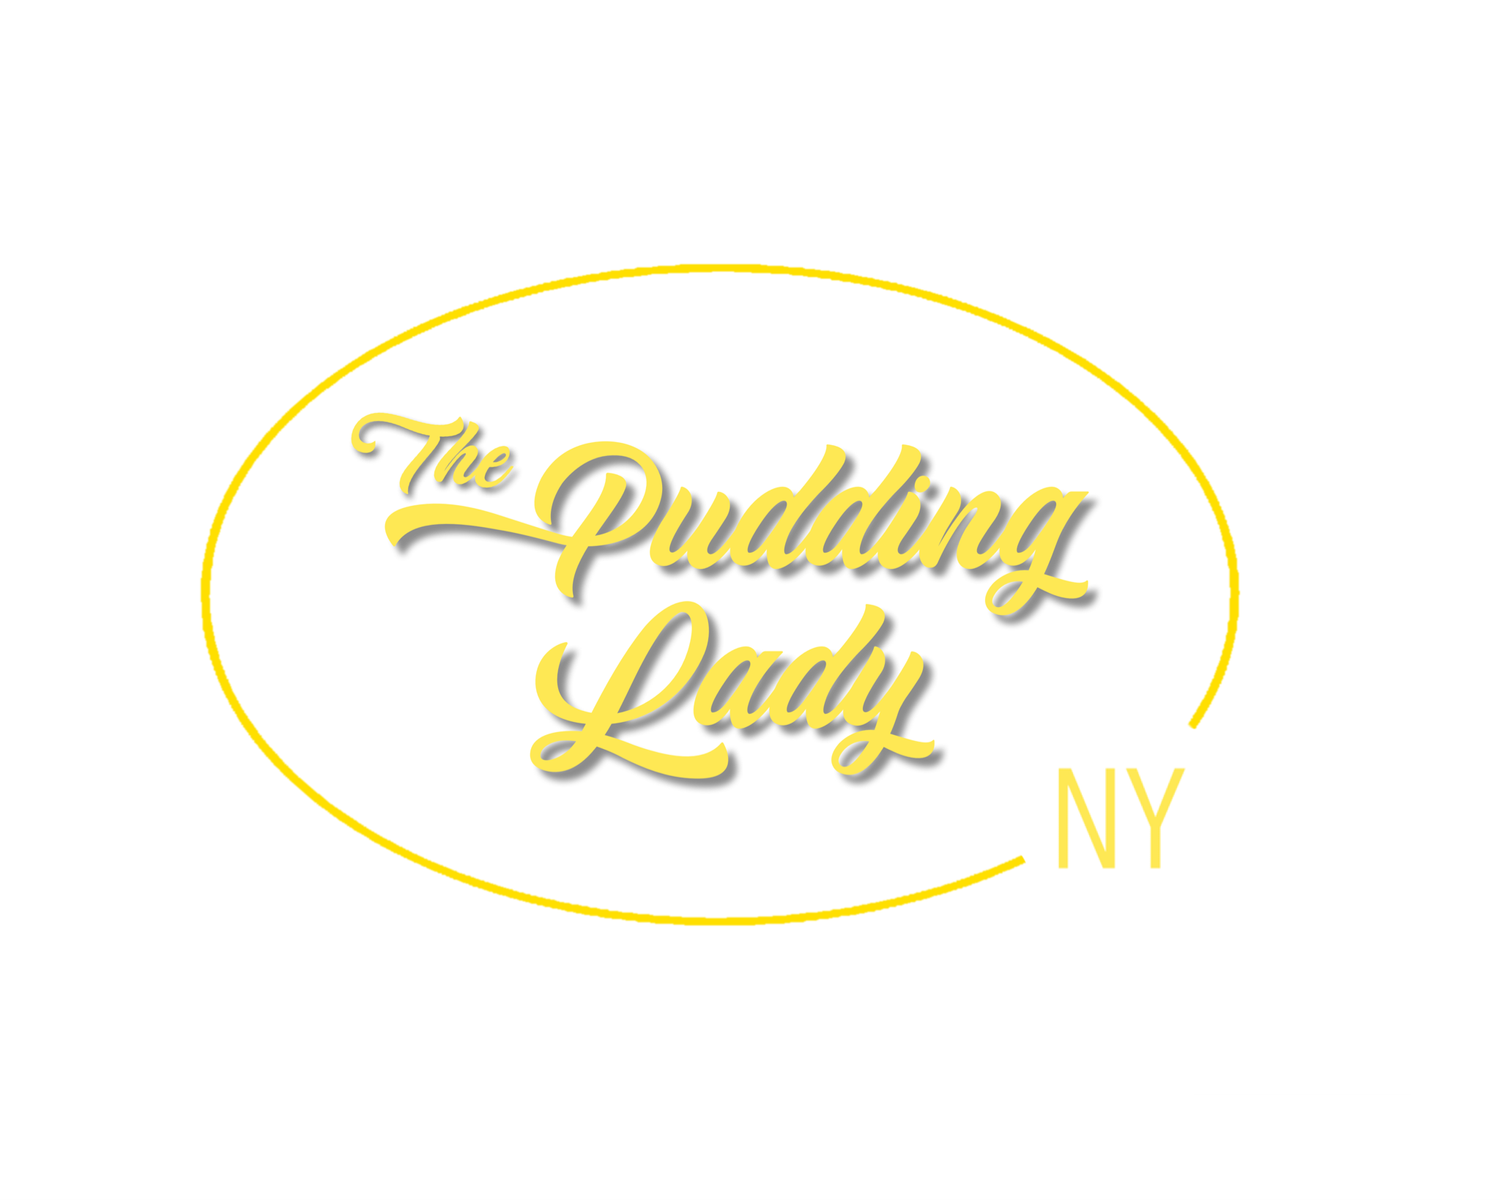 The Pudding Lady NY